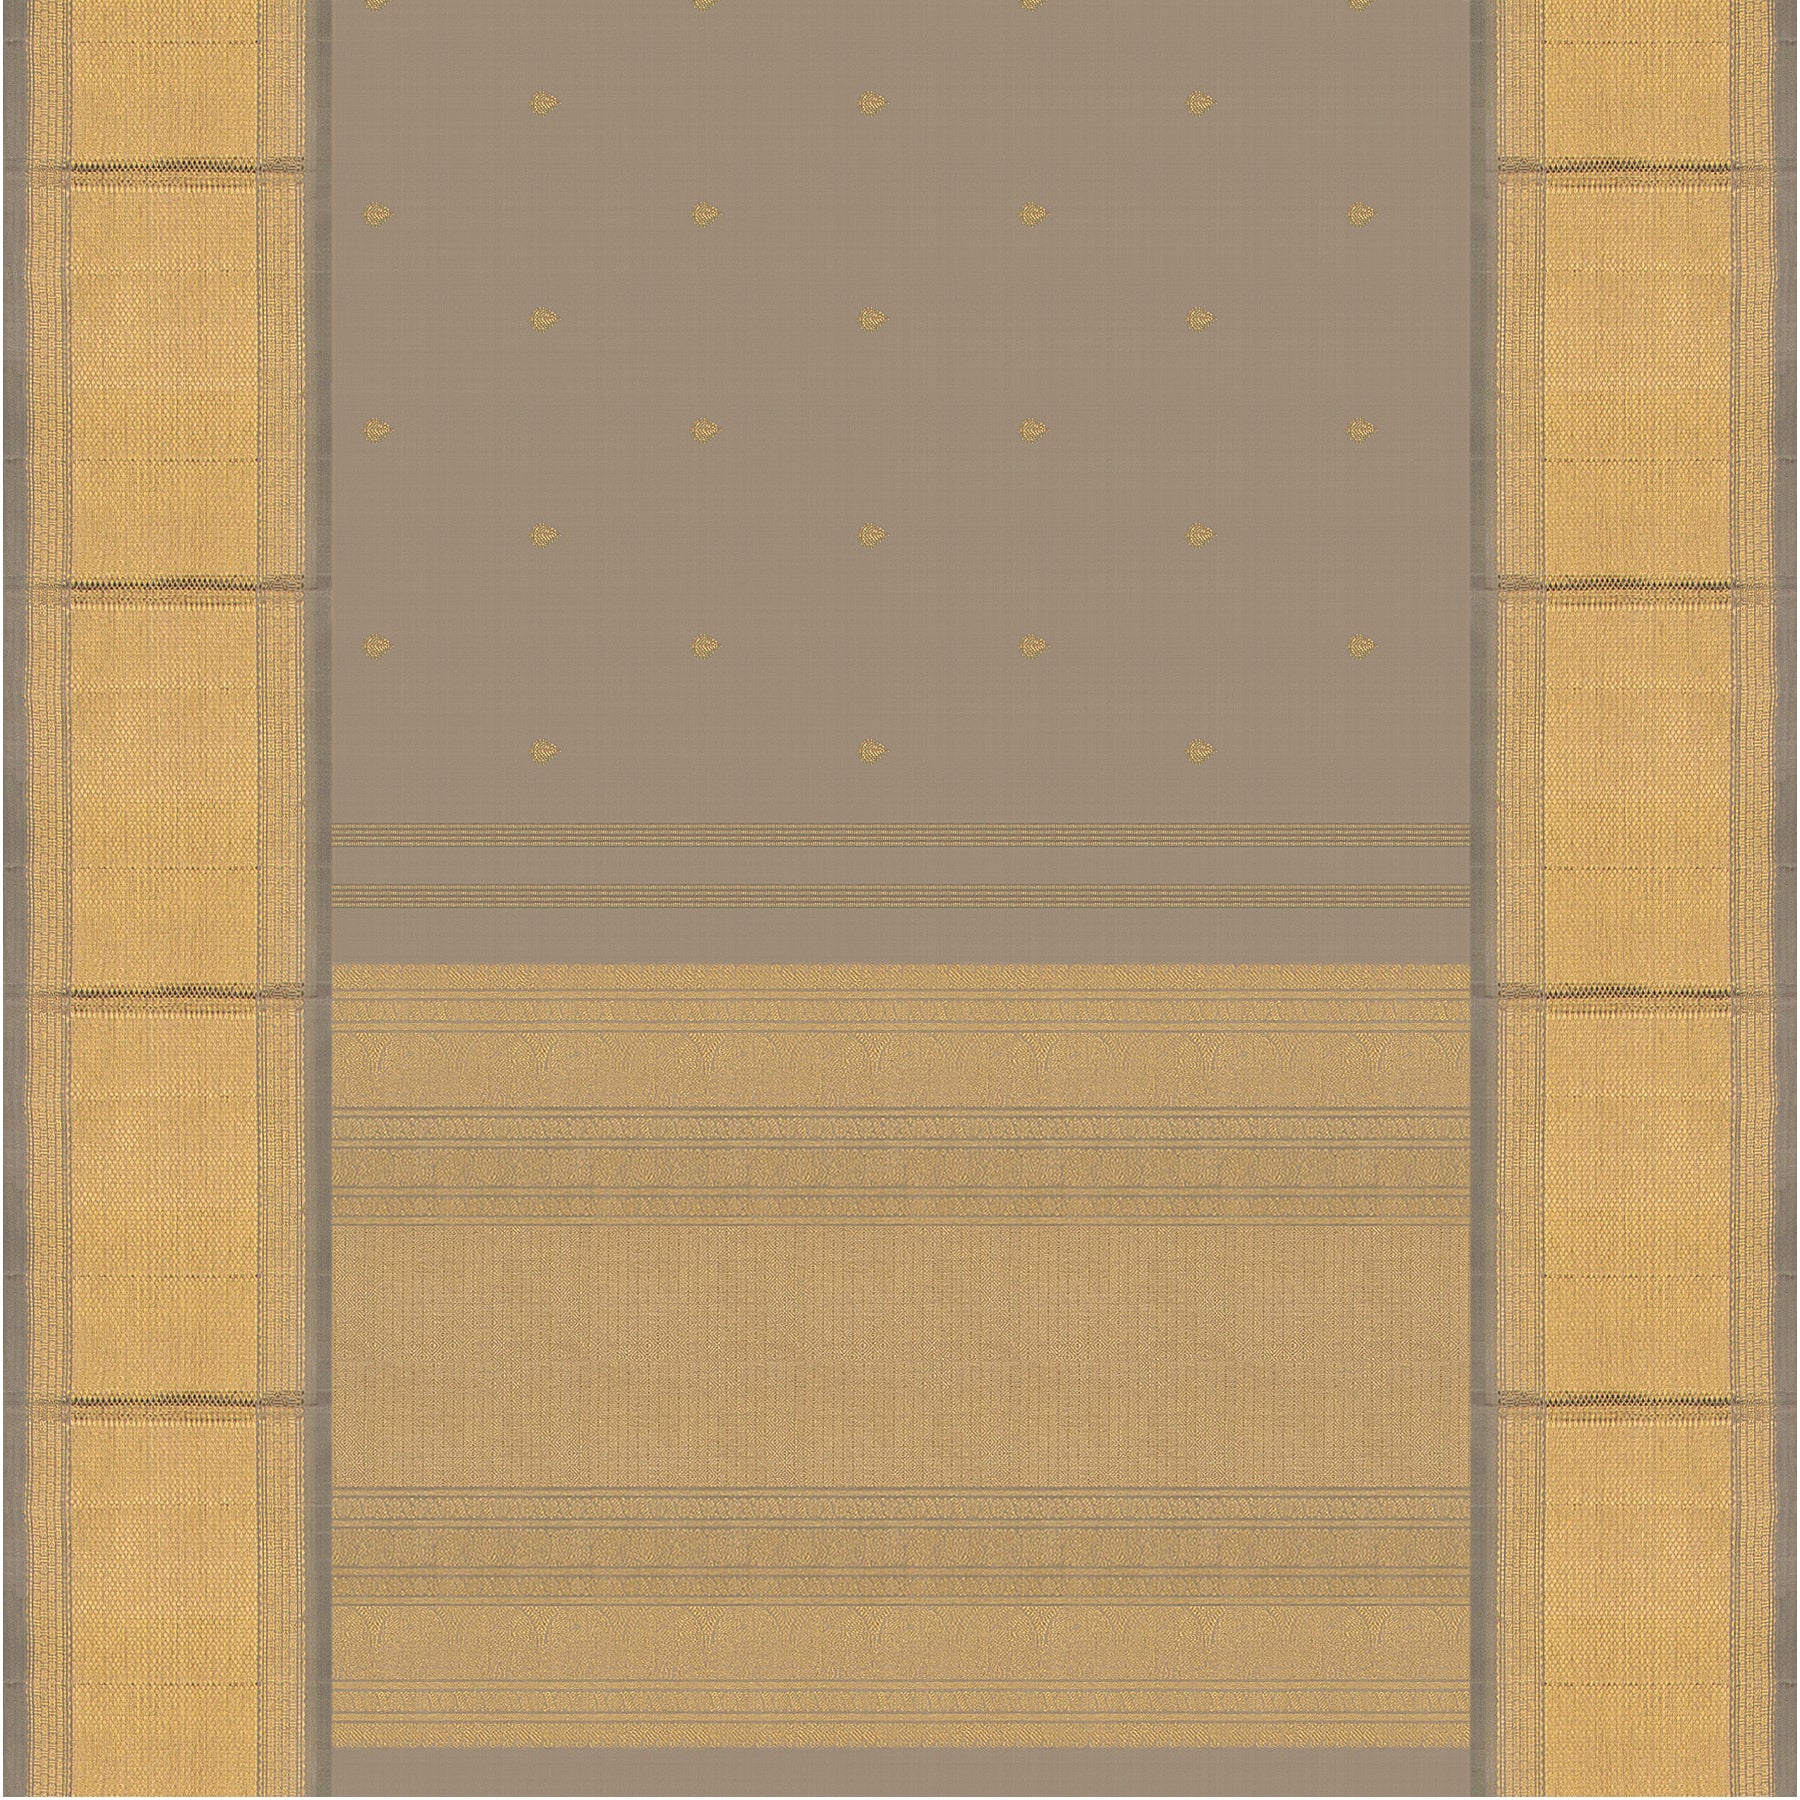 Kanakavalli Kanjivaram Silk Sari 23-041-HS001-13157 - Full View